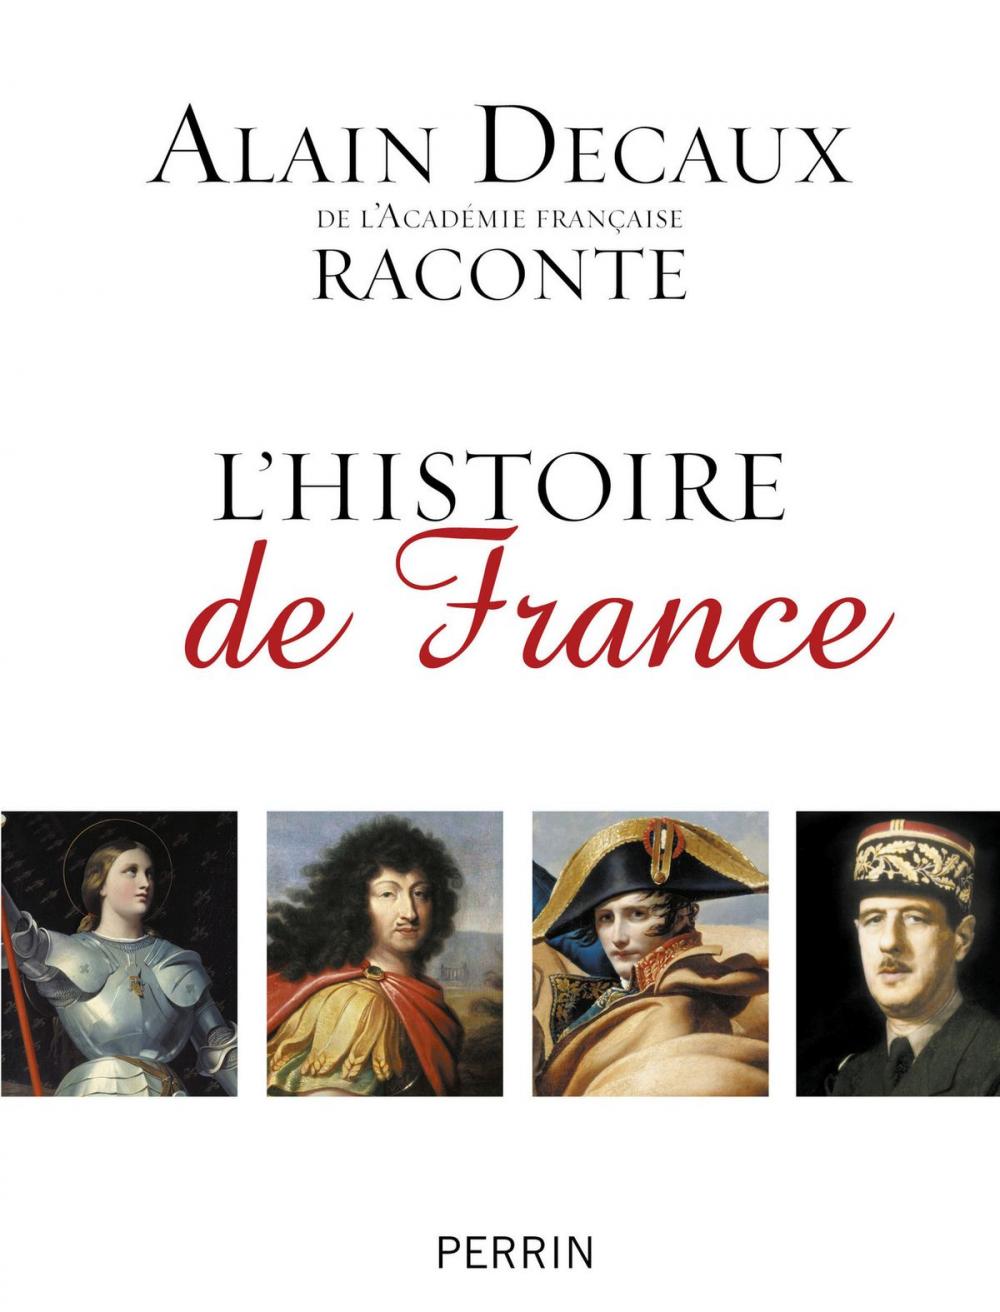 Big bigCover of Alain Decaux raconte l'histoire de France